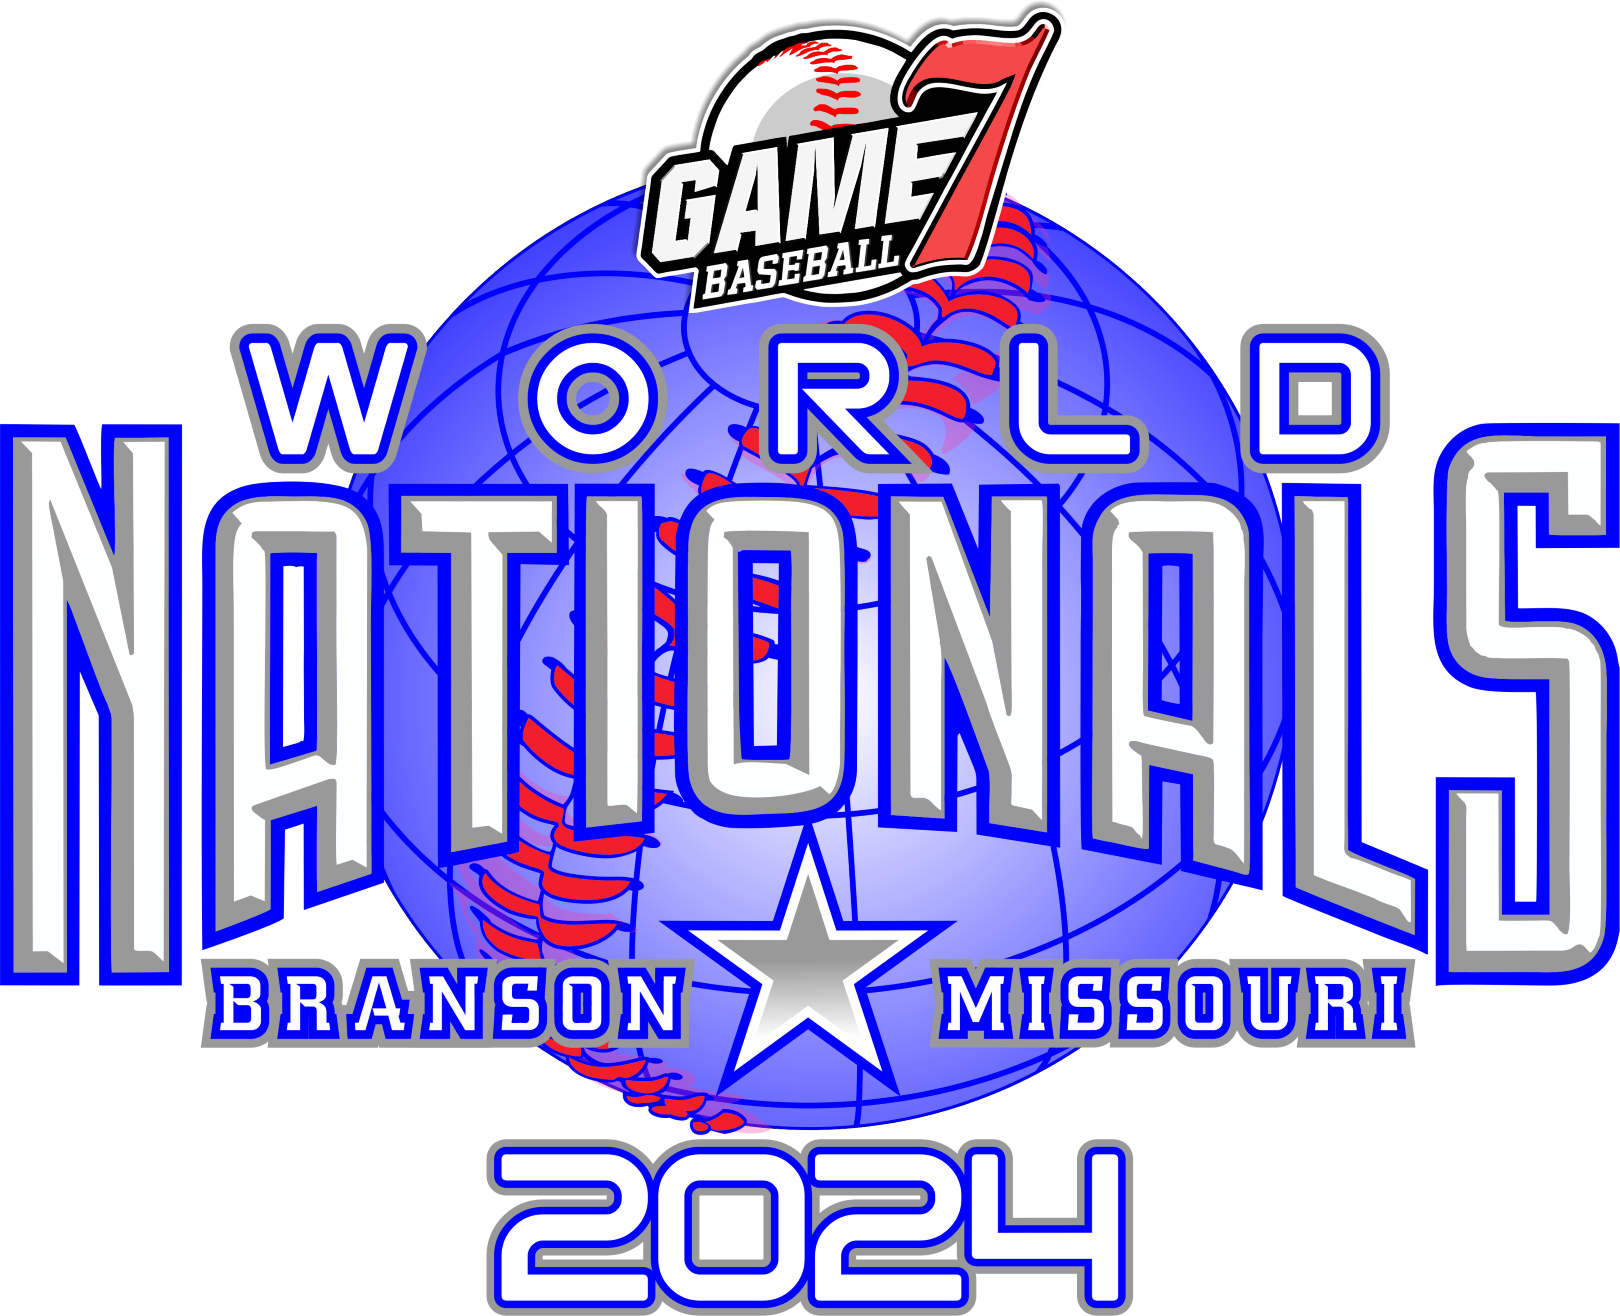 World Nationals - Branson Logo